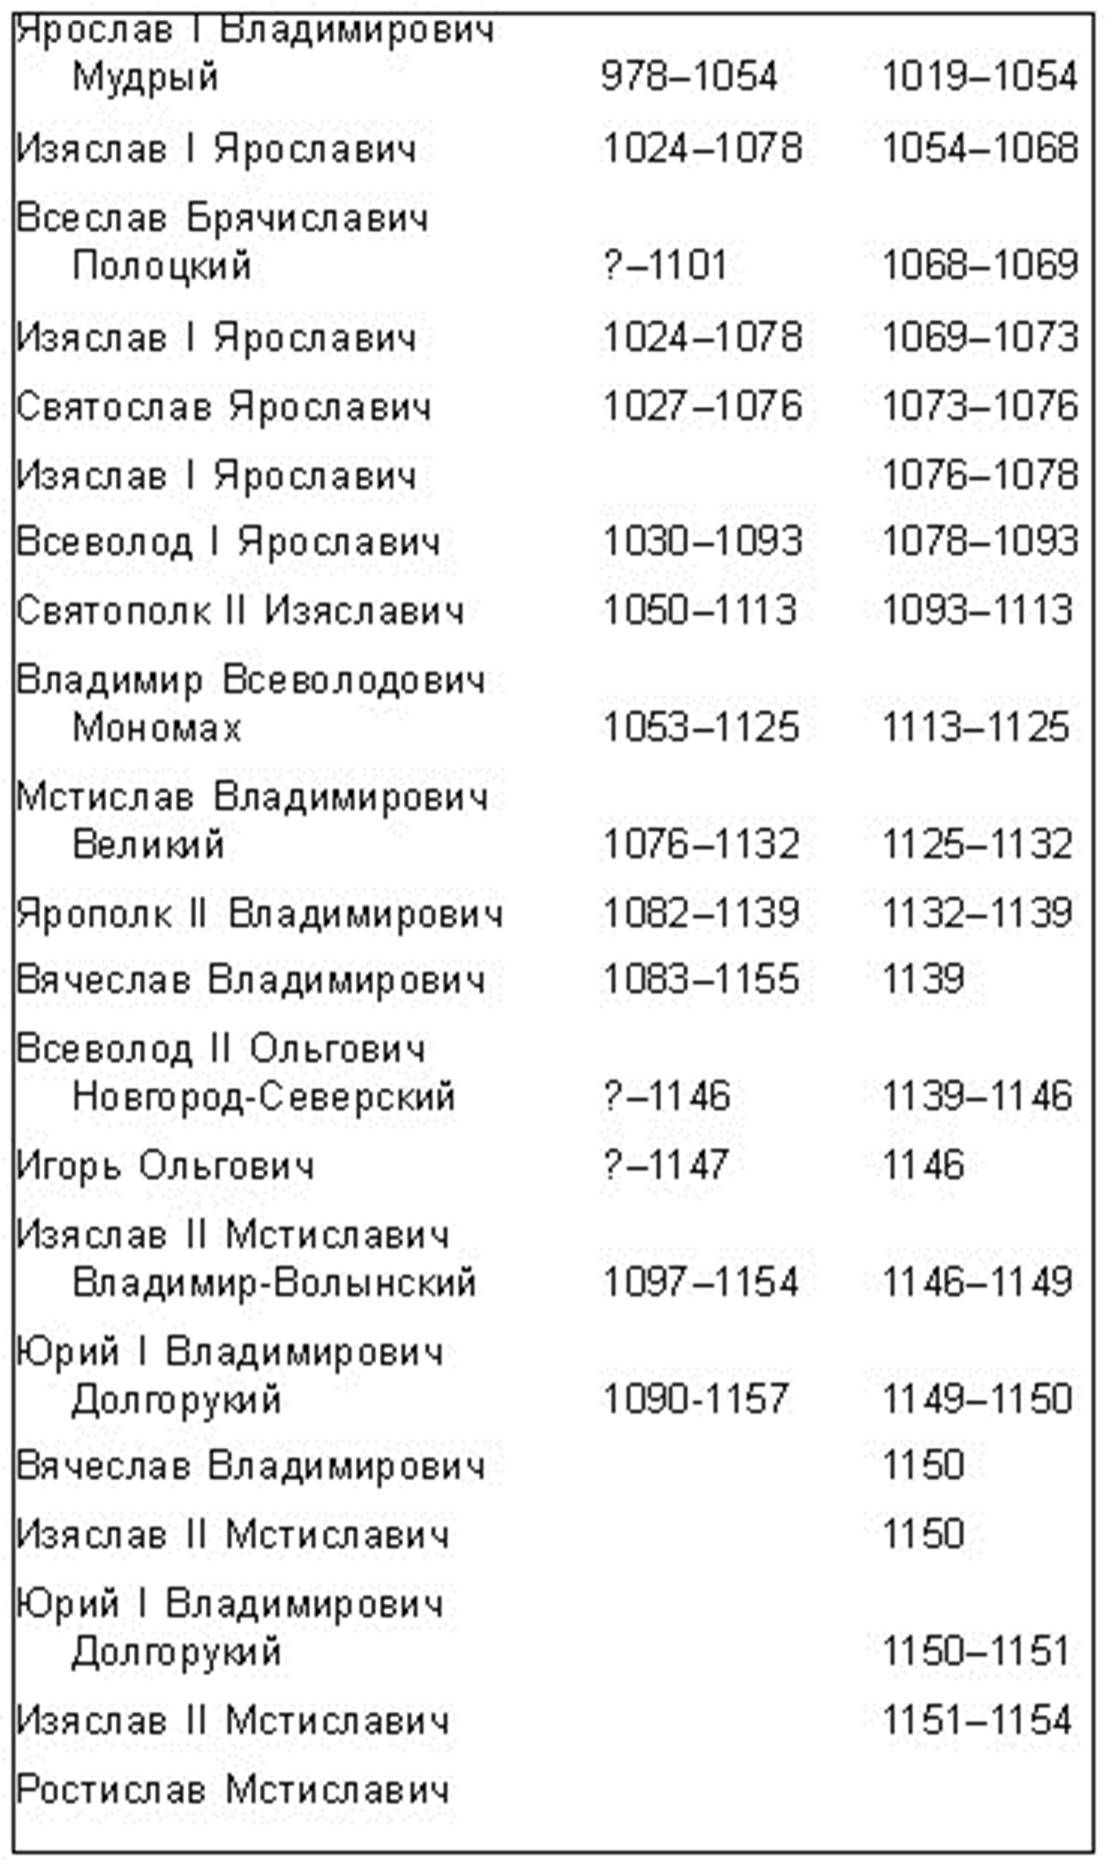 Хронология правления императоров России